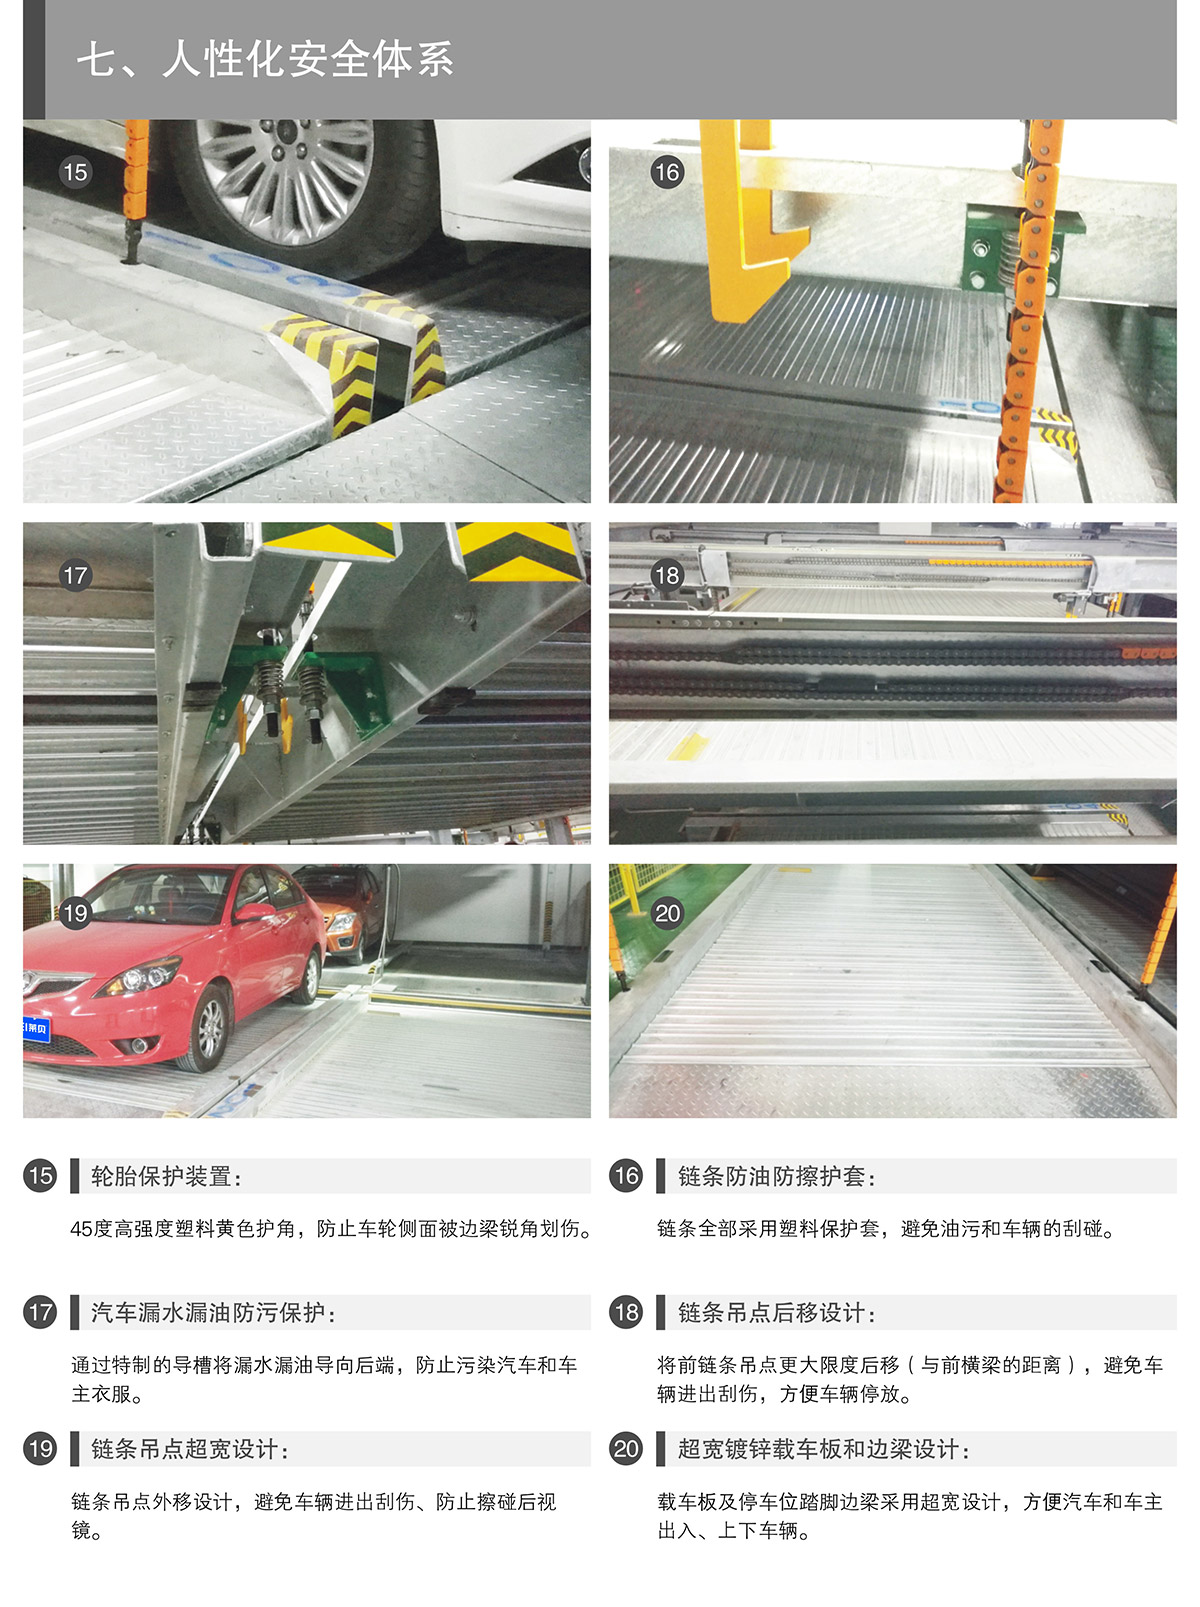 四川PSH多层升降横移类机械式立体停车设备人性化安全体系.jpg